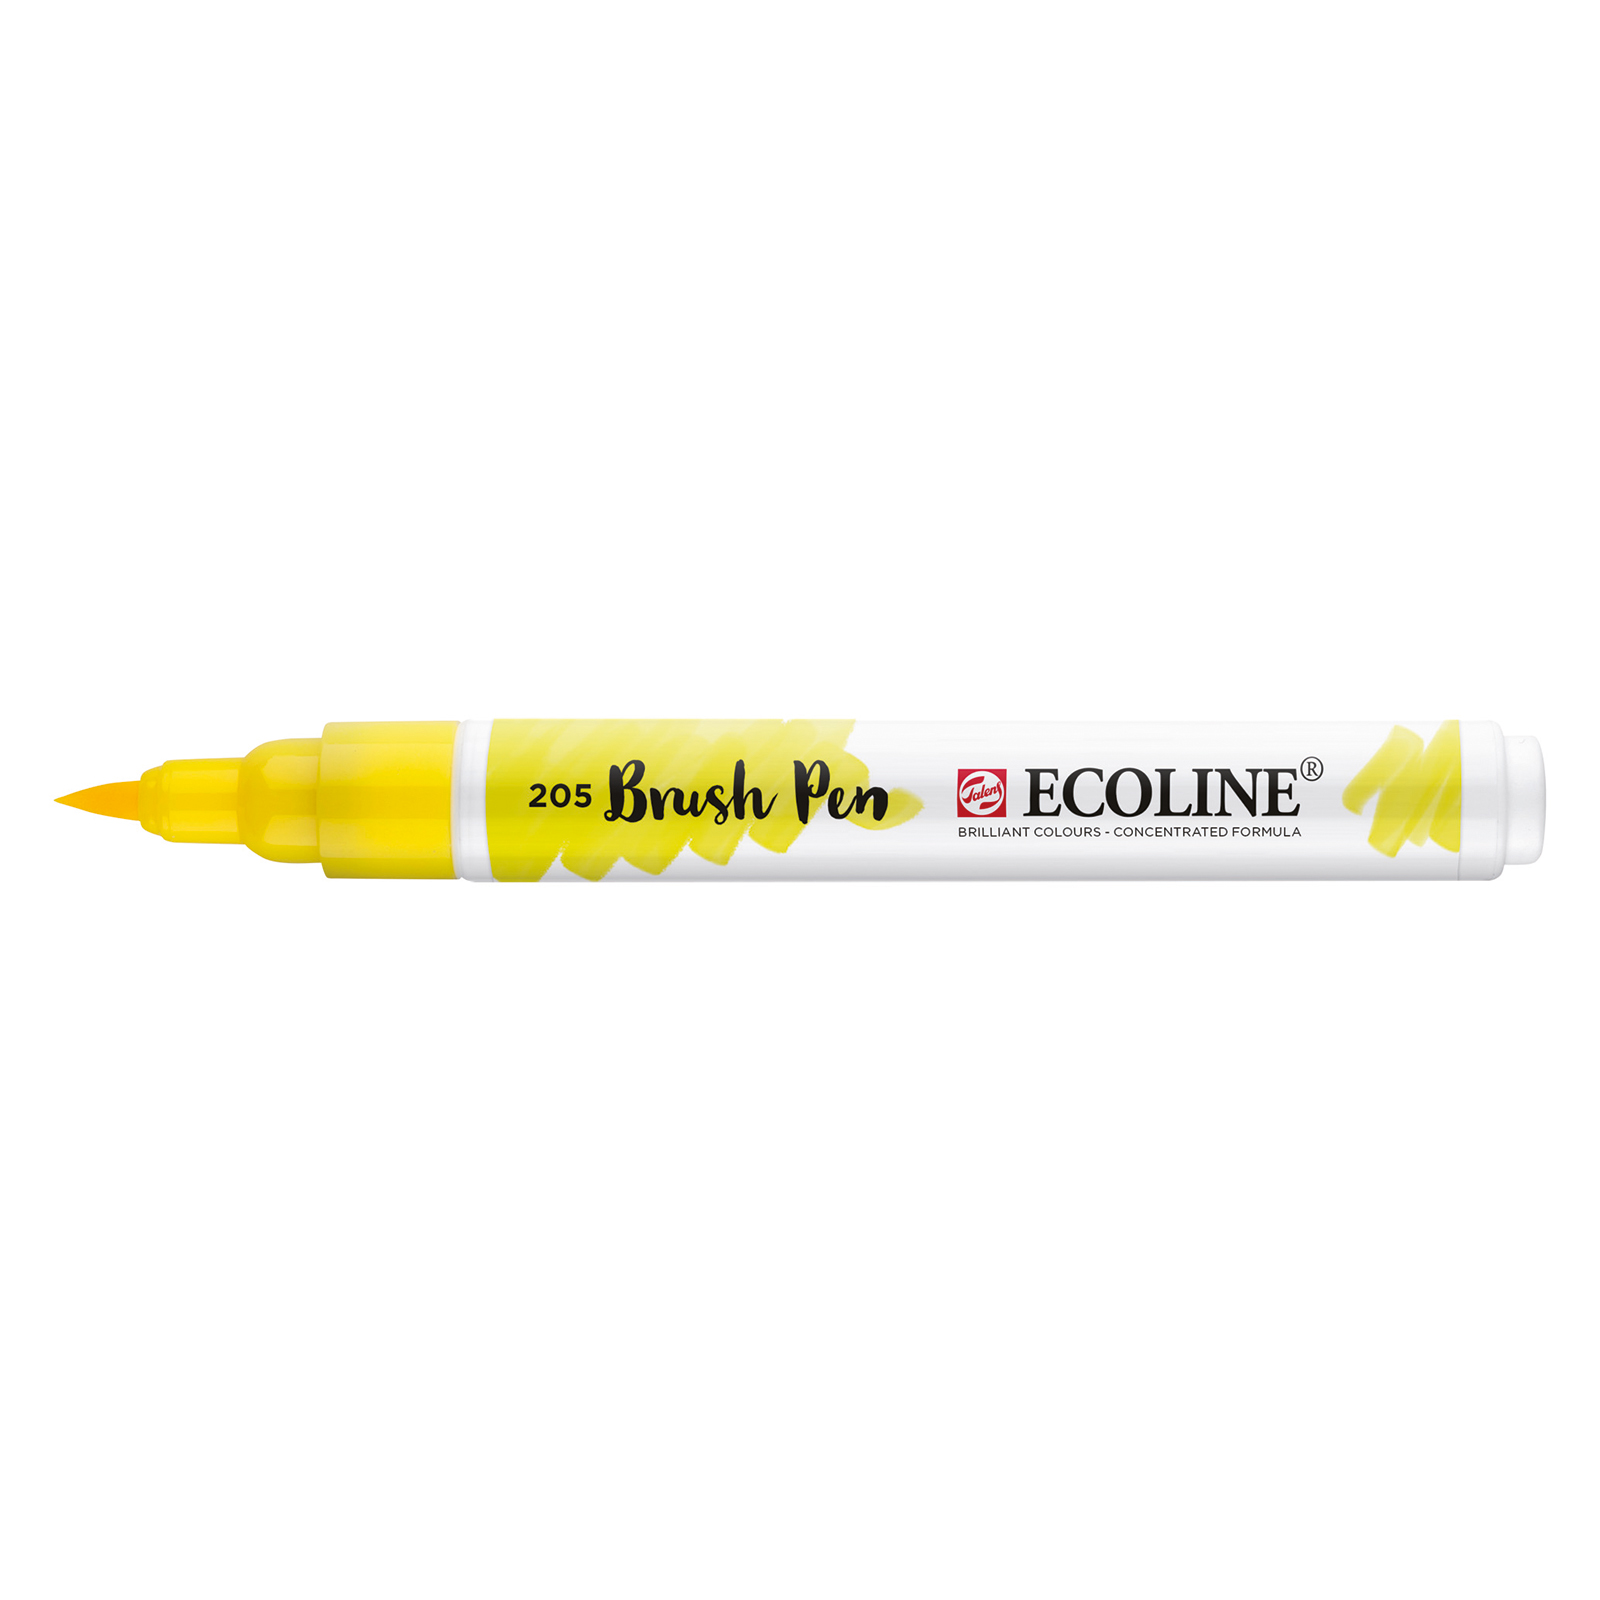 Ecoline • Brush Pen Lemon Yellow 205